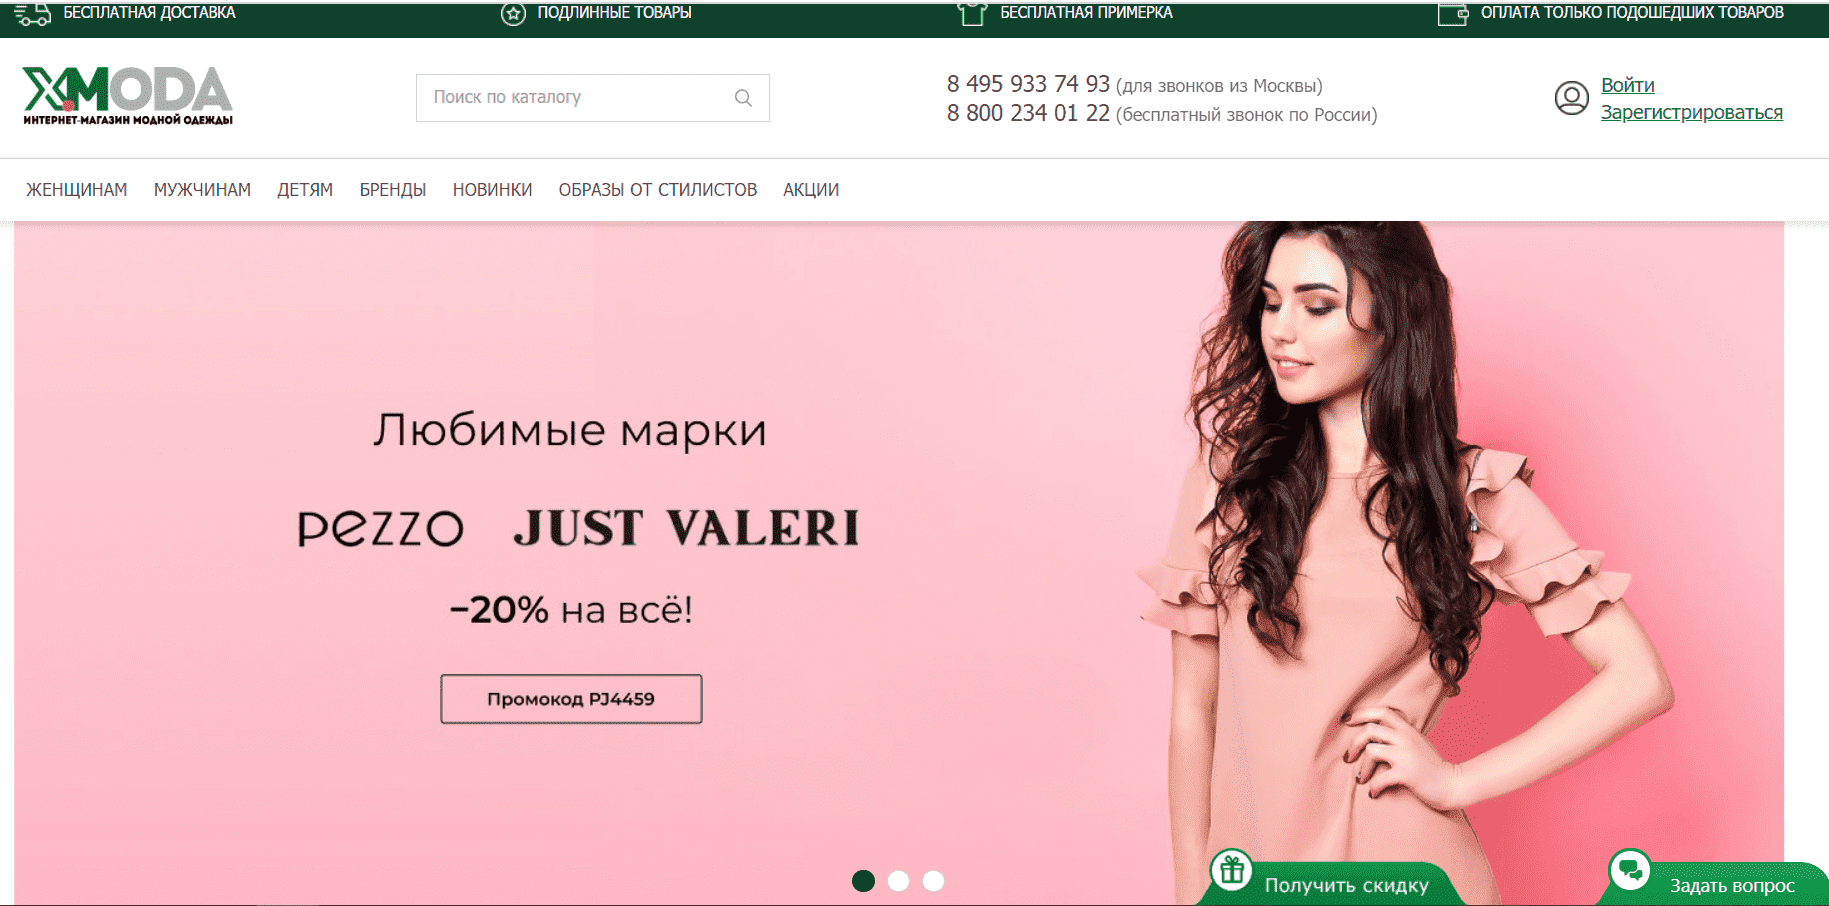 Сайты одежды с доставкой по россии. Интернет-магазины одежды список. Интернет-магазин одежды с бесплатной. Самый дешевый интернет магазин. Самый дешевый интернет магазин одежды.